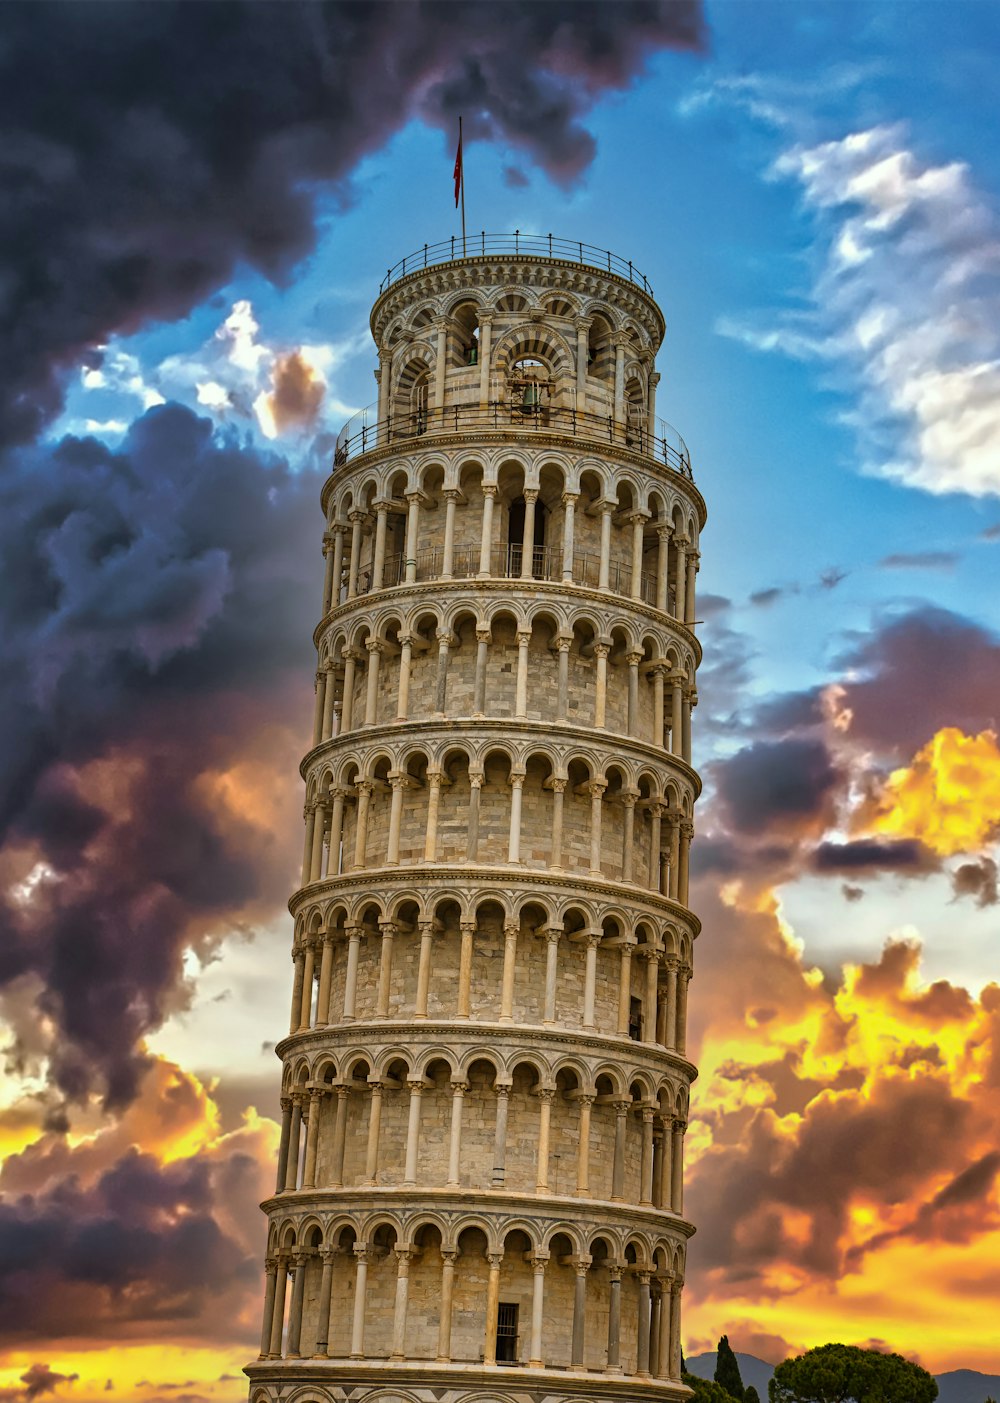 Torre inclinada de Pisa bajo el cielo nublado azul y blanco durante el día